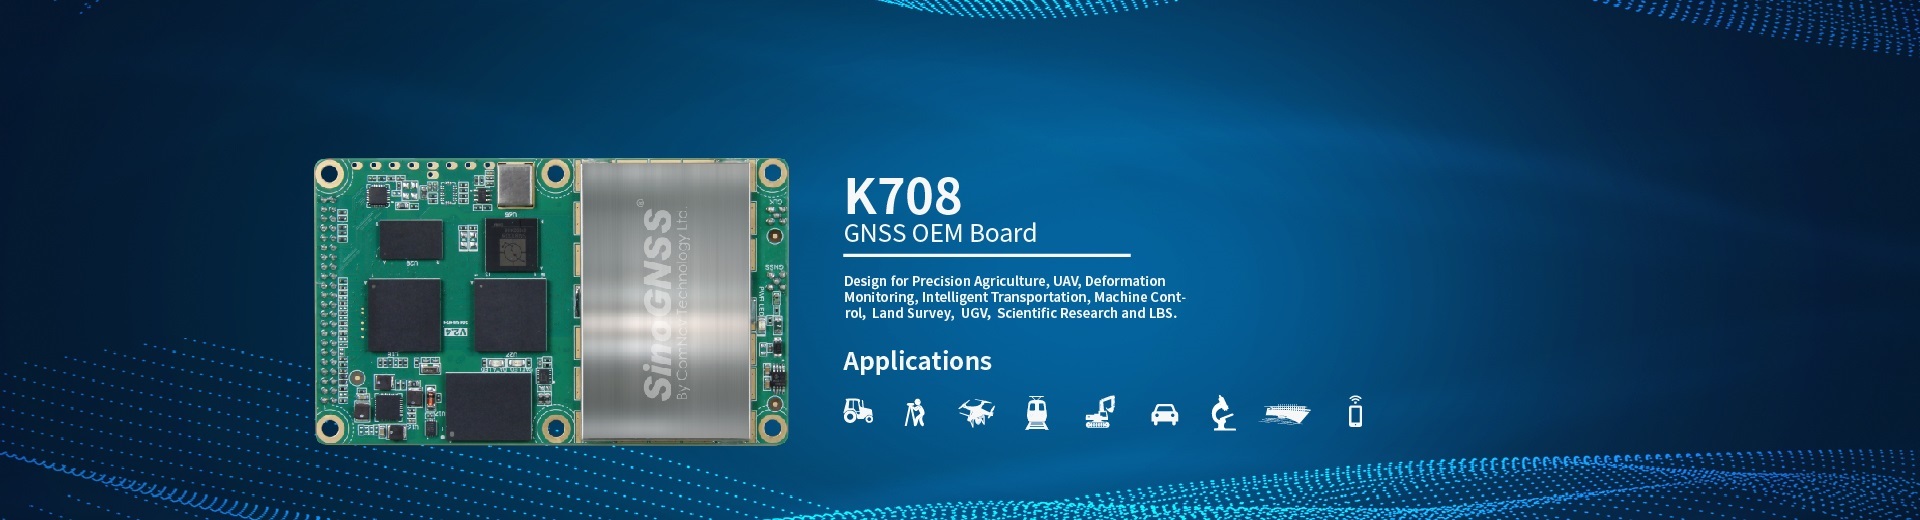 K708 GNSS OEM Board (EOL)